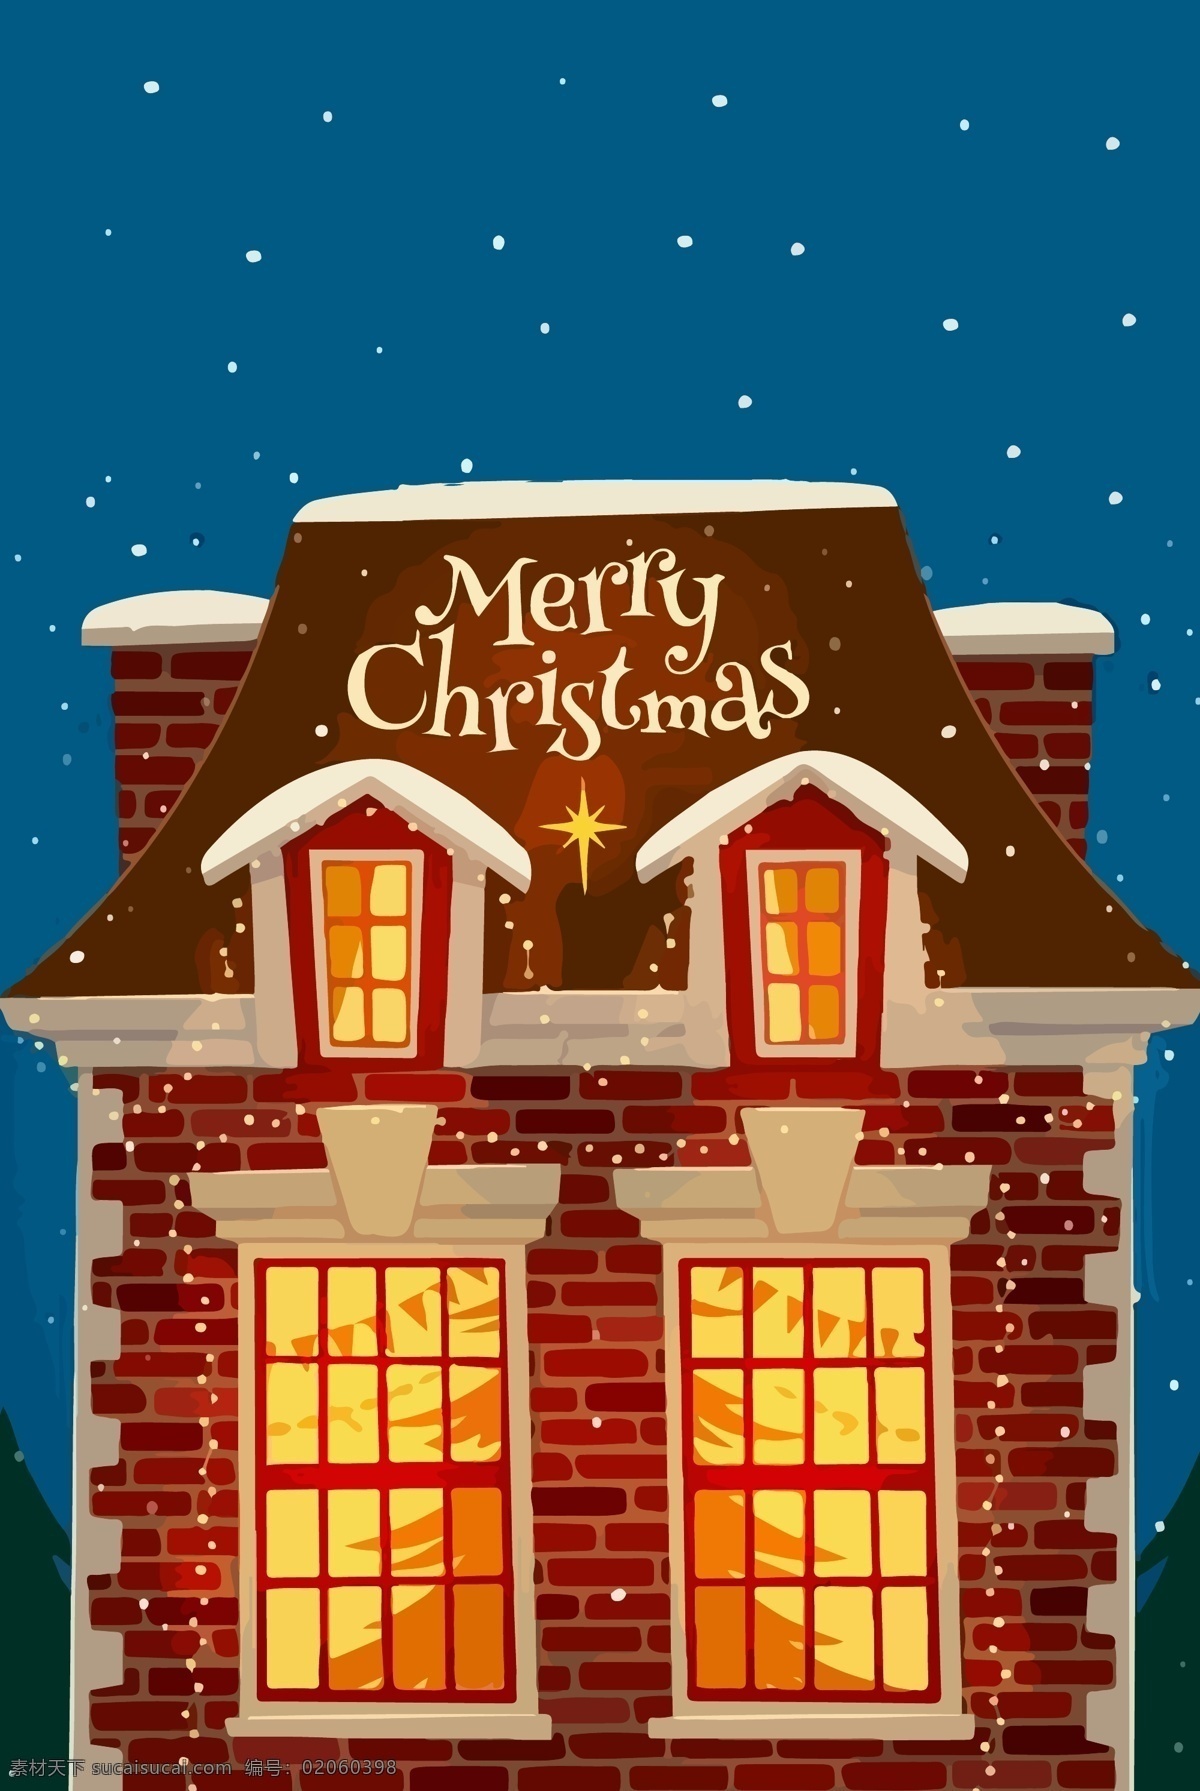 2019 圣诞节 平安夜 背景 广告背景 圣诞素材 圣诞节促销 圣诞快乐 城堡 圣诞节展板 新年活动背景